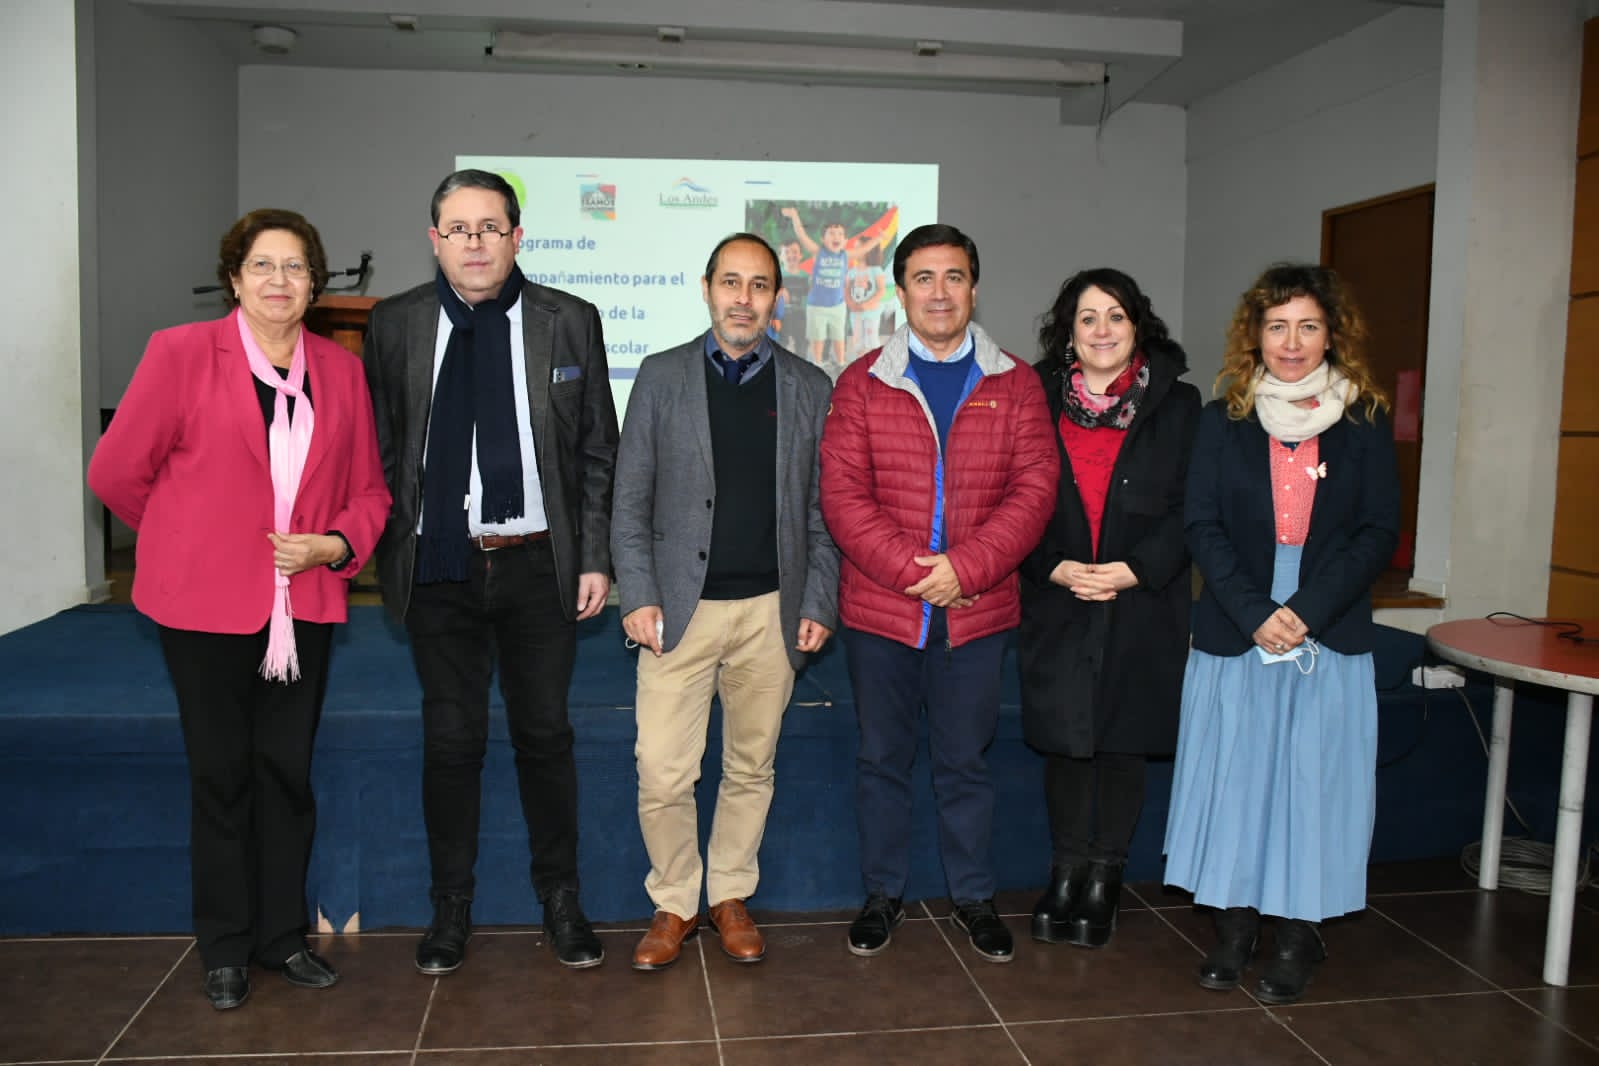 LOS ANDES: Educación Municipal de Los Andes contará con equipo experto para fortalecer la convivencia escolar en sus establecimientos